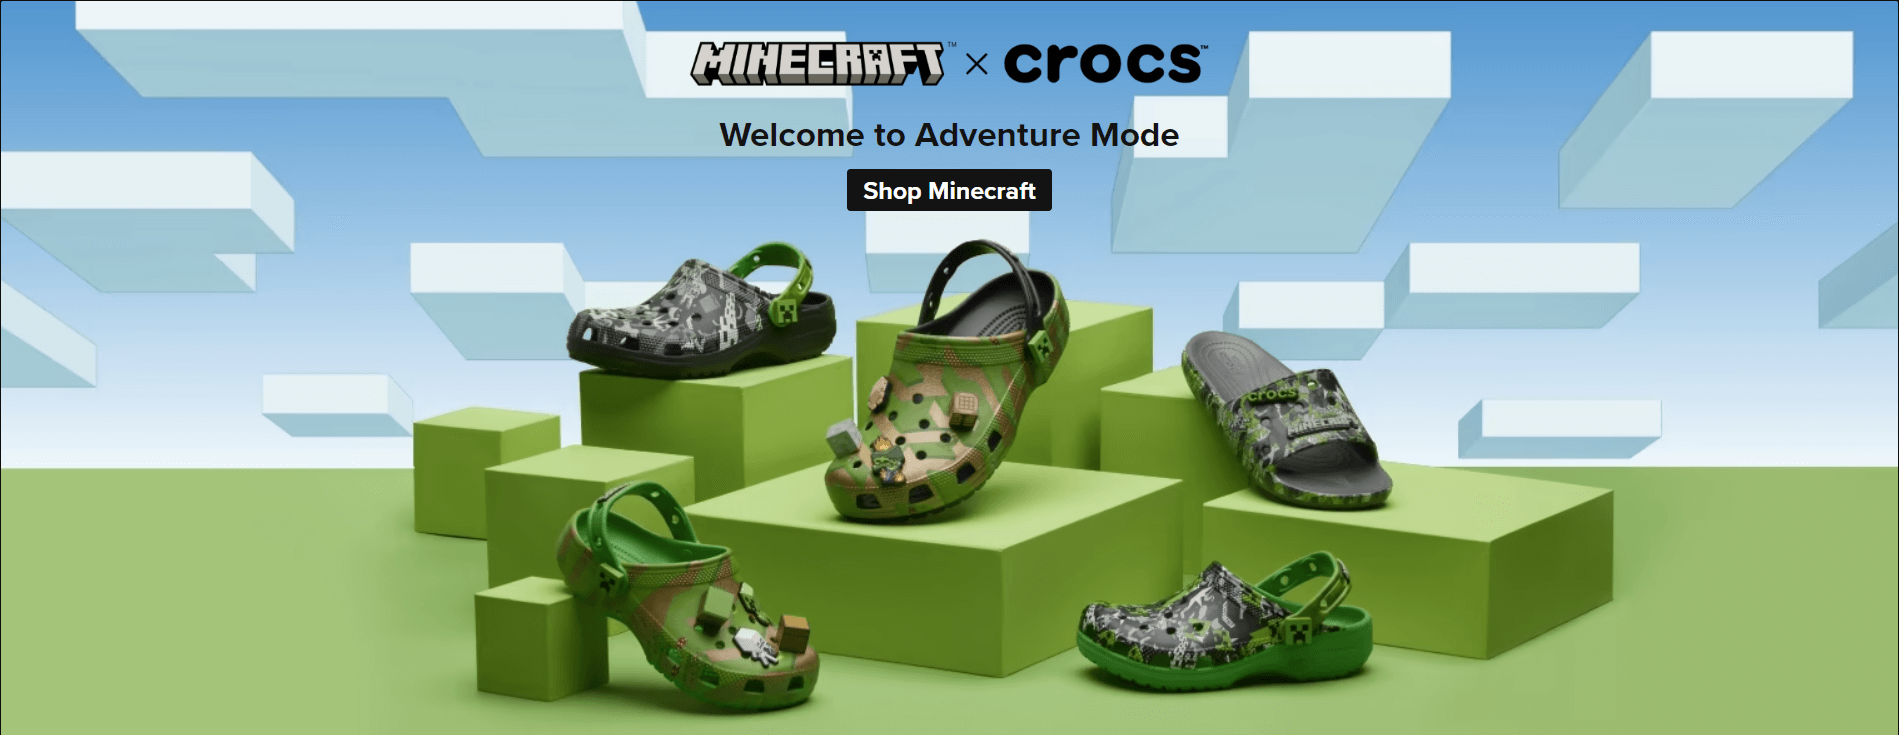 Minecraft X Crocs